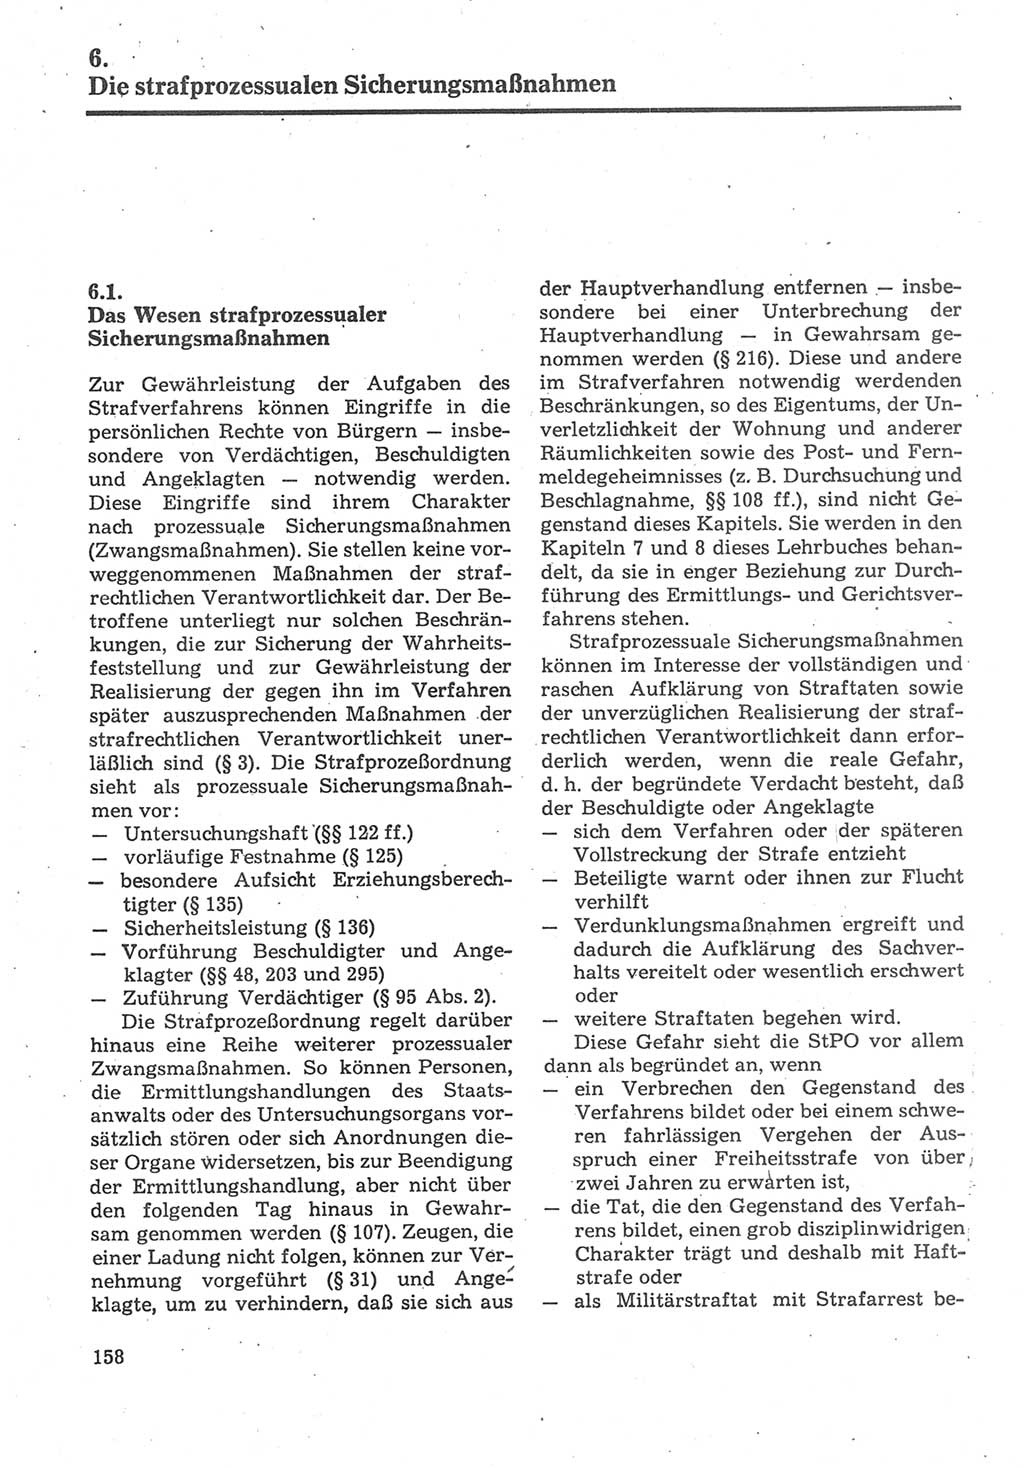 Strafverfahrensrecht [Deutsche Demokratische Republik (DDR)], Lehrbuch 1987, Seite 158 (Strafverf.-R. DDR Lb. 1987, S. 158)